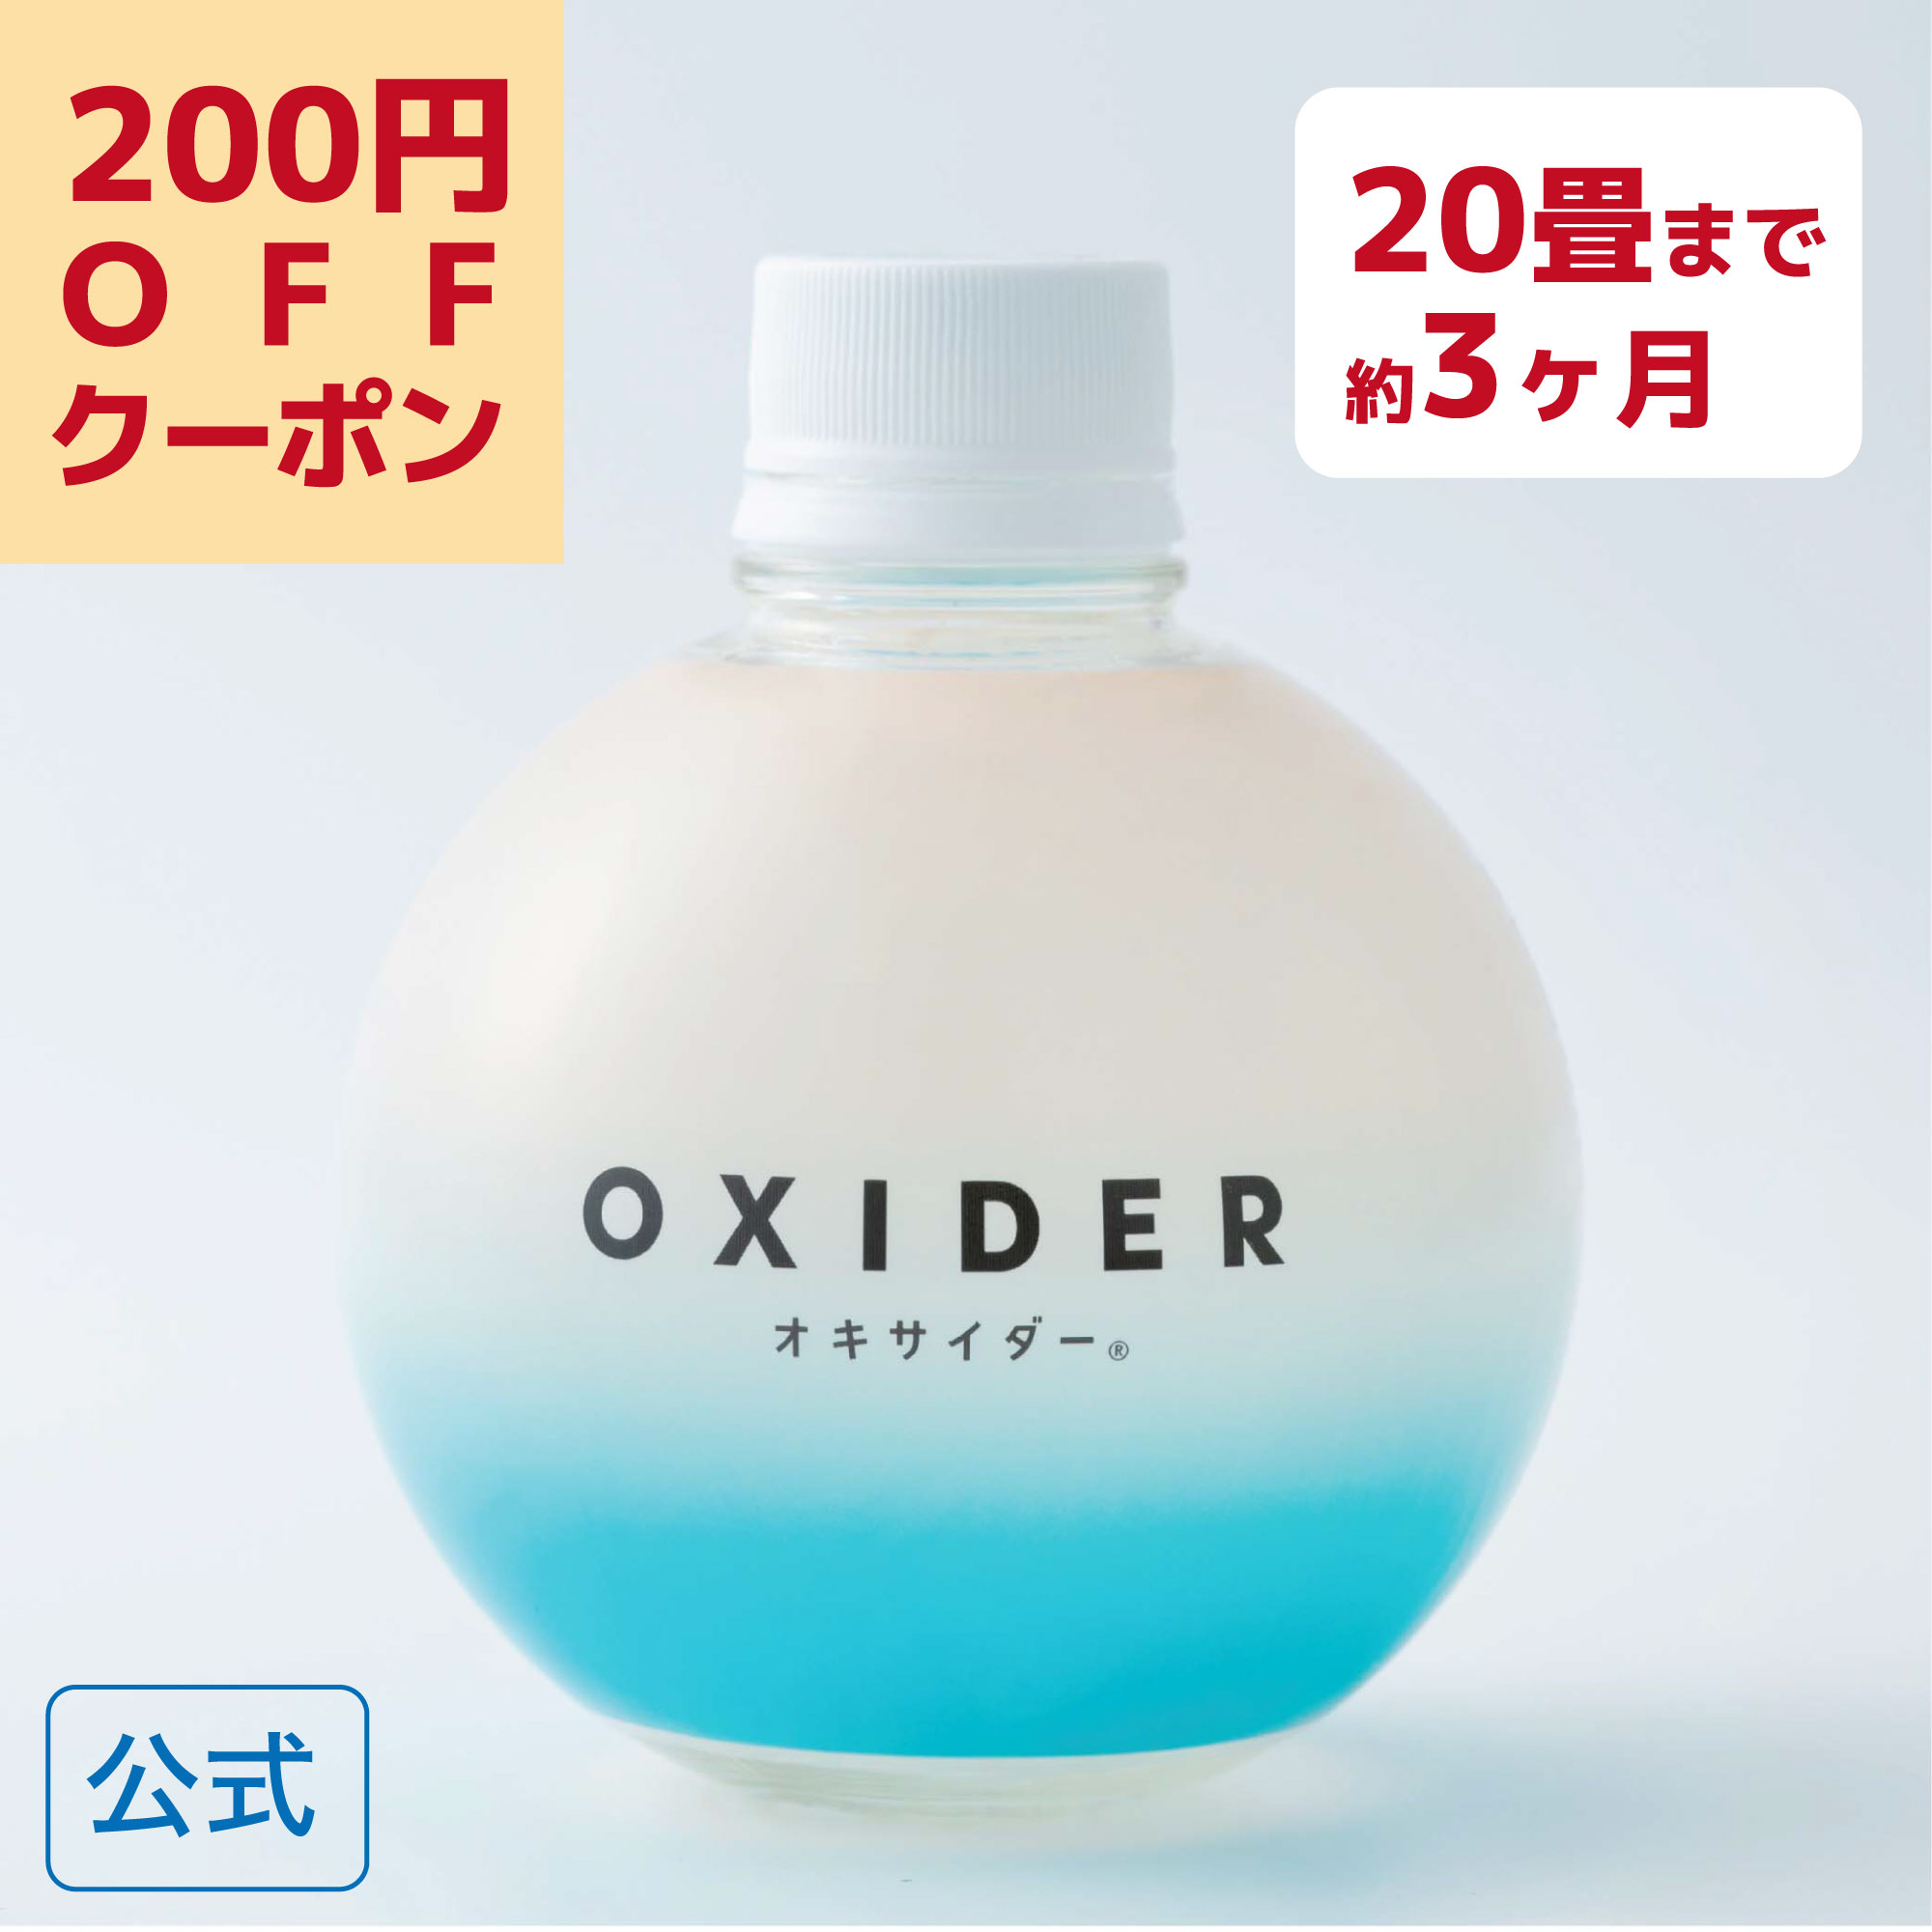 【楽天市場】【ポイント10倍&200円OFFクーポン】 OXIDER